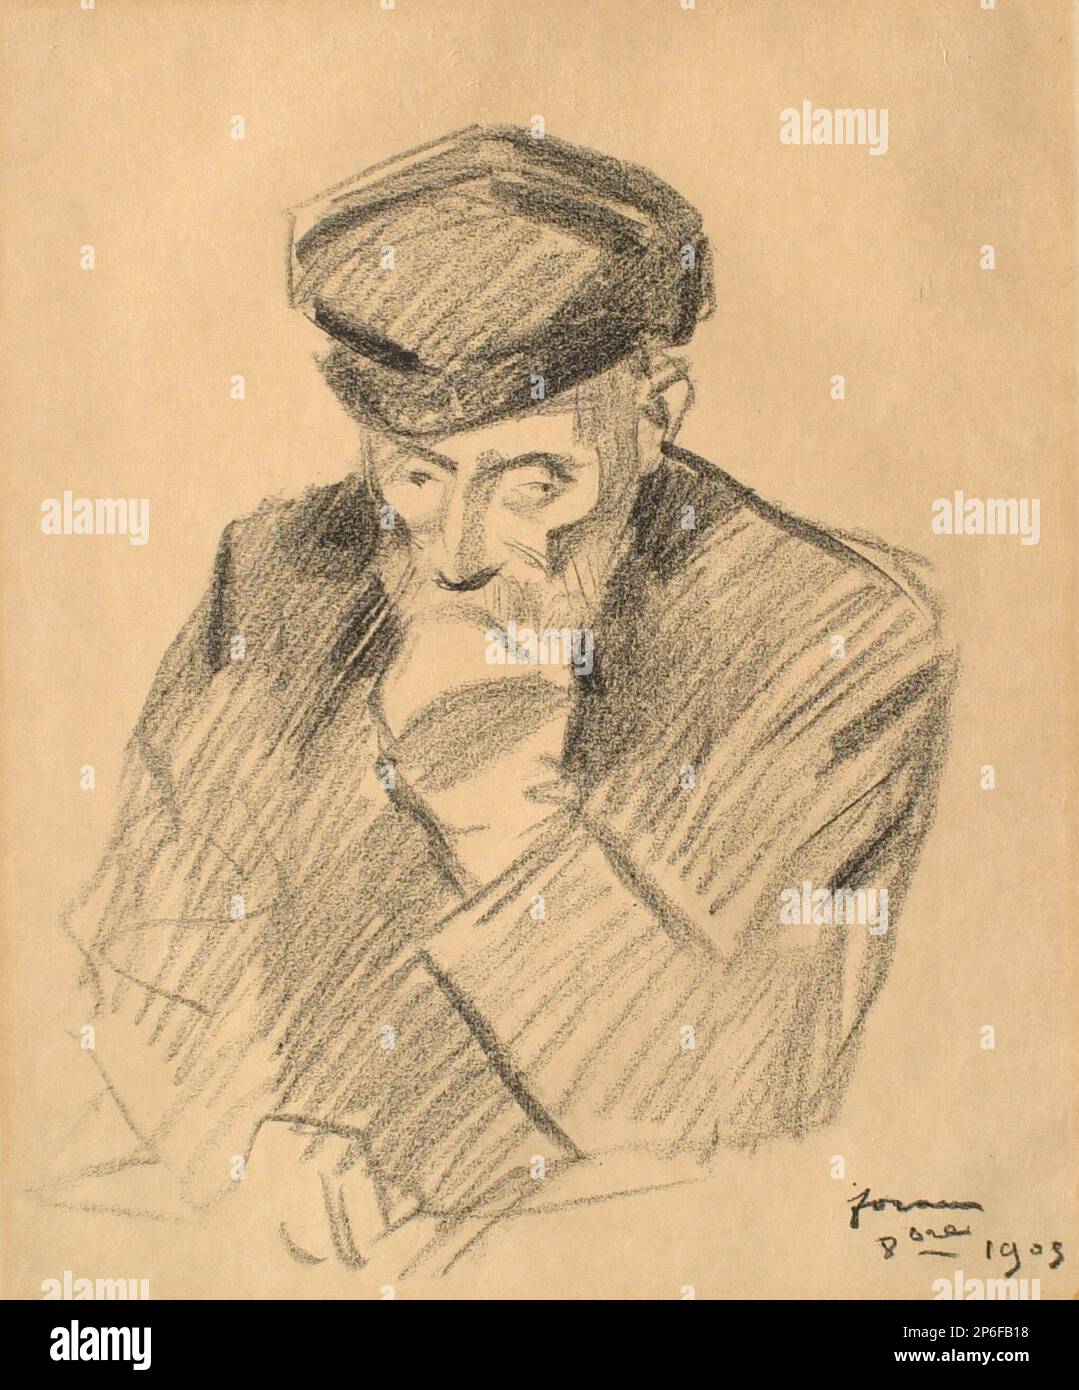 Jean Louis Forain, Portrait of Pierre Auguste Renoir, Painter, 1905, lithograph on paper. Stock Photo